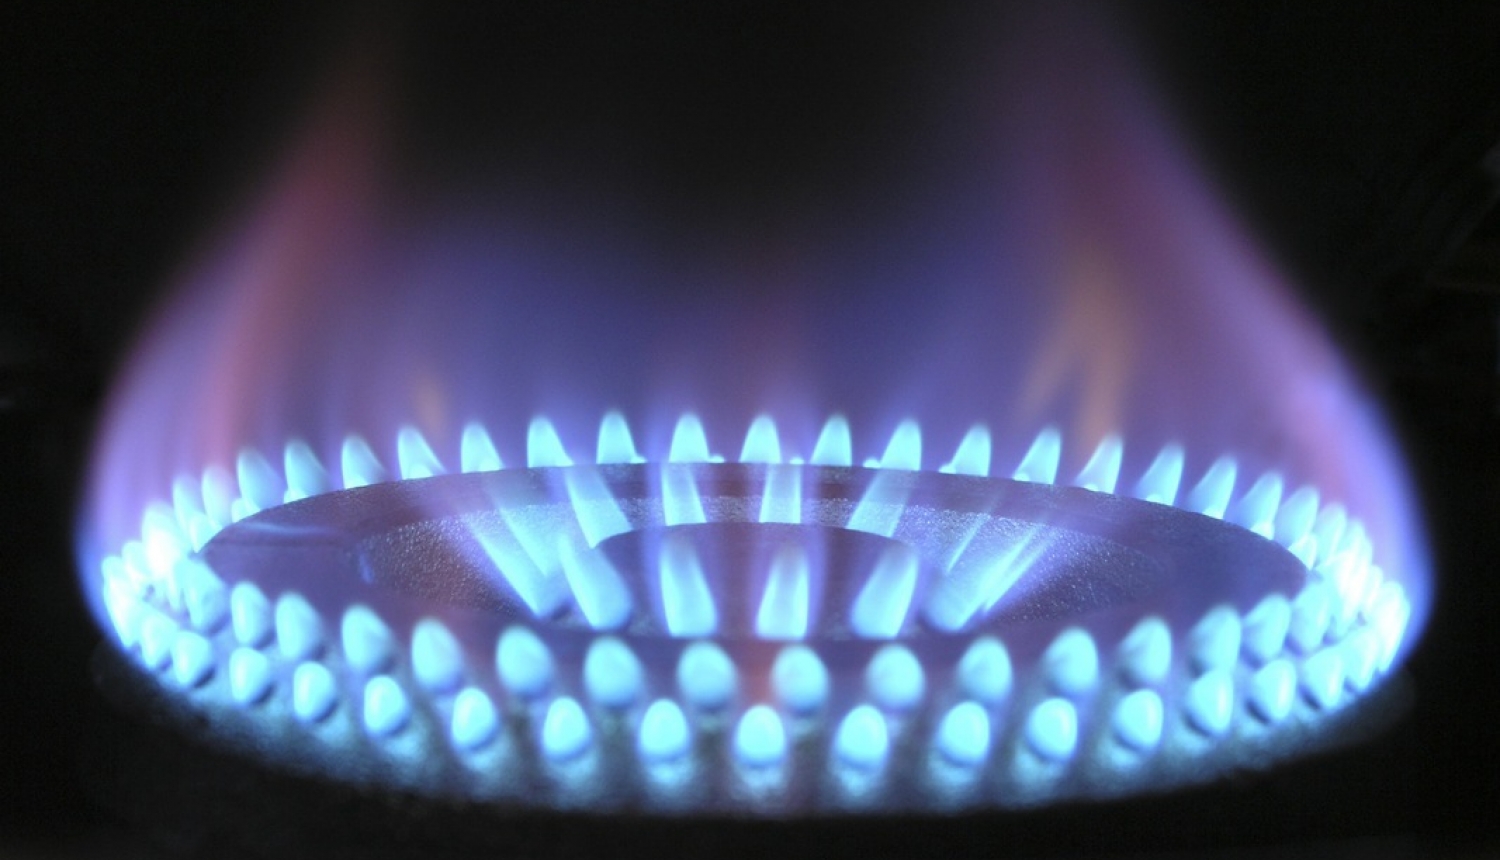 Valdība sper nozīmīgu soli reģionālā gāzes tirgus izveidei ar 2020. gadu